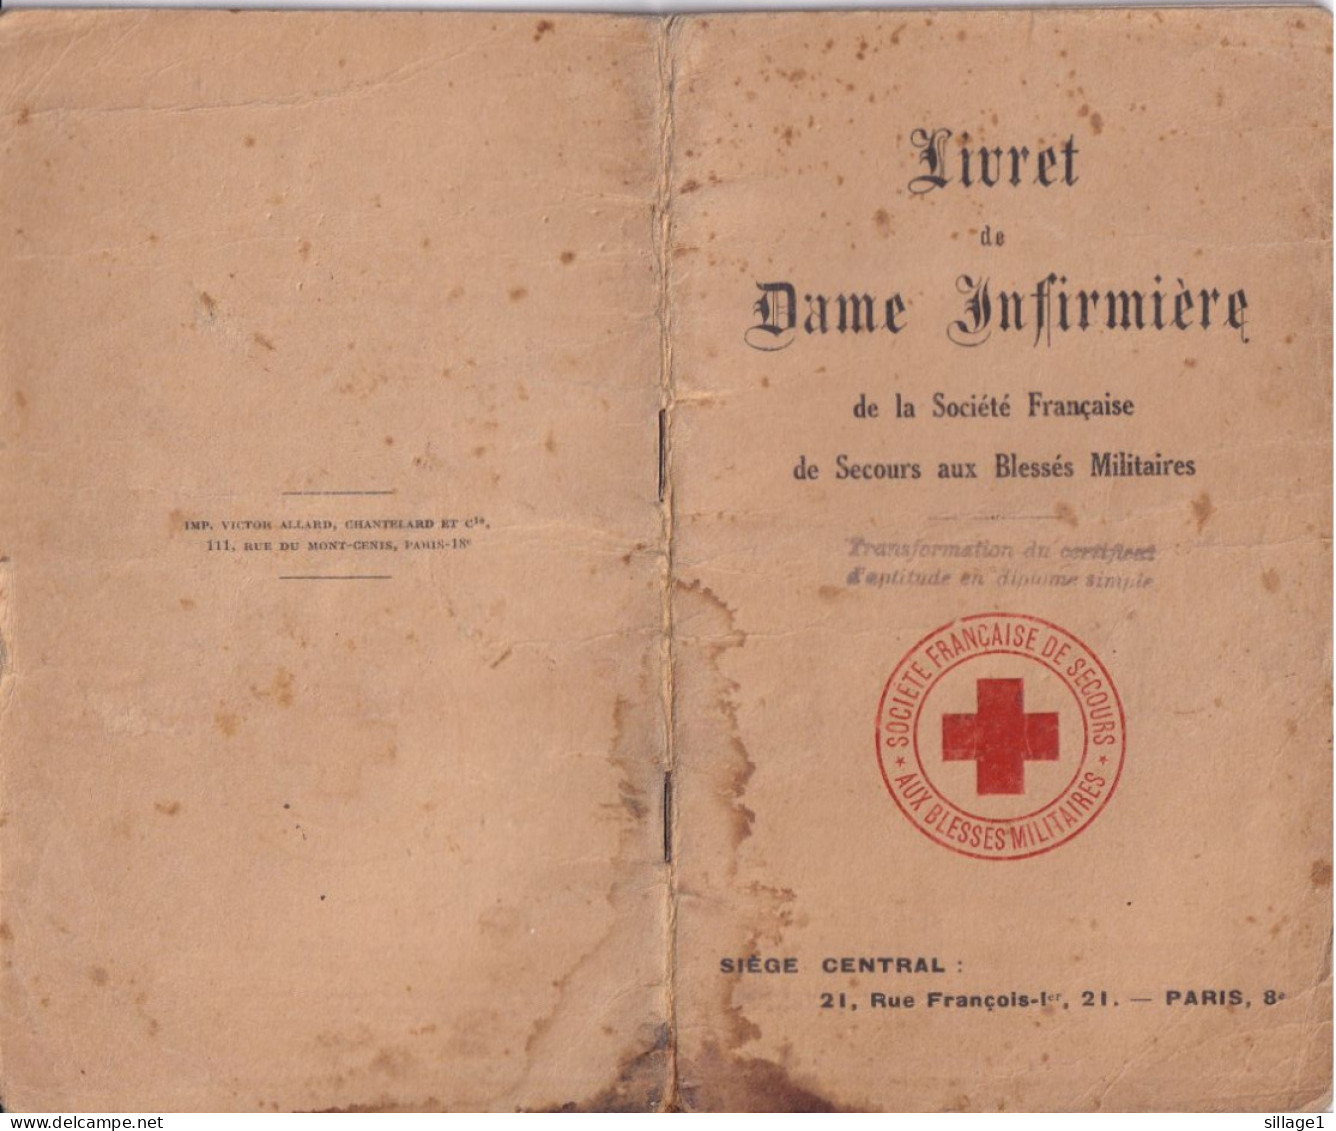 Boulogne S/Mer Livret De Dame Infirmière De Melle Wiart De 1930 Croix Rouge Française - 1915 - WW1 SSBM, ADF, UFF - Croce Rossa